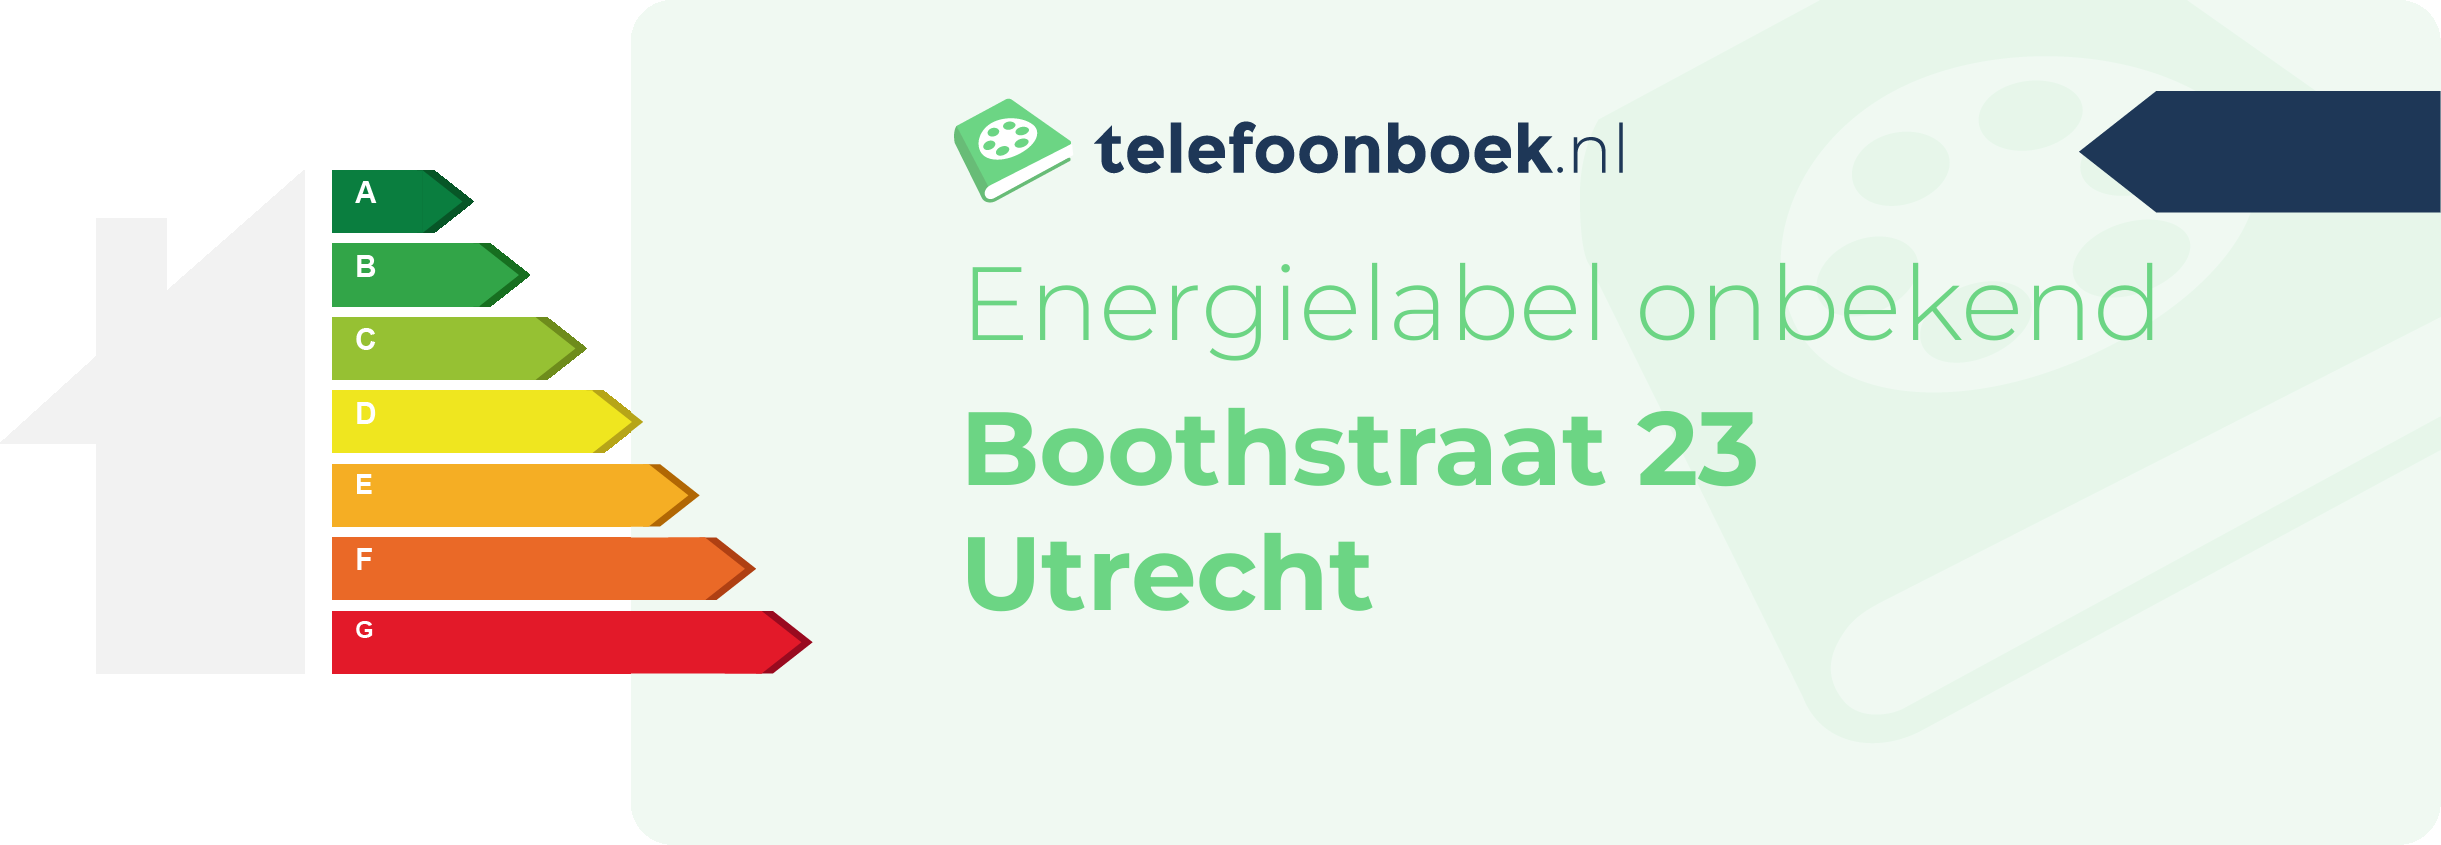 Energielabel Boothstraat 23 Utrecht